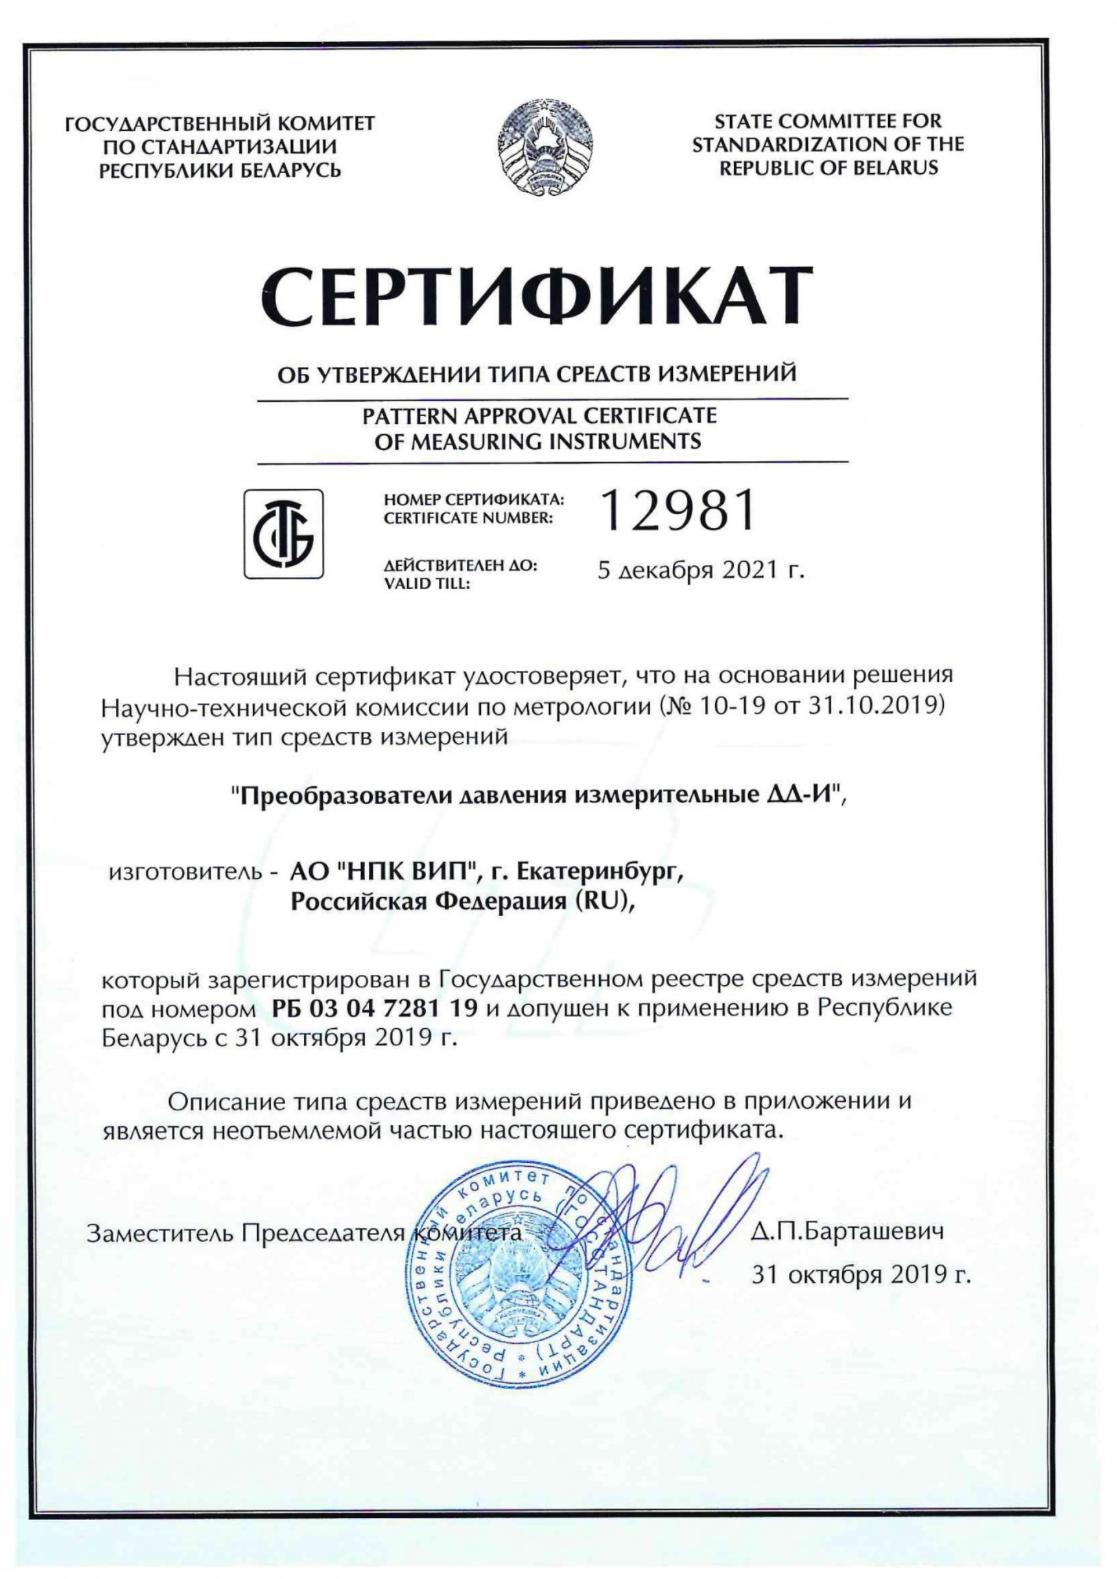 Получен сертификат утверждения типа средства измерения в Республике Беларусь на железнодорожные преобразователи давления ДД–И.